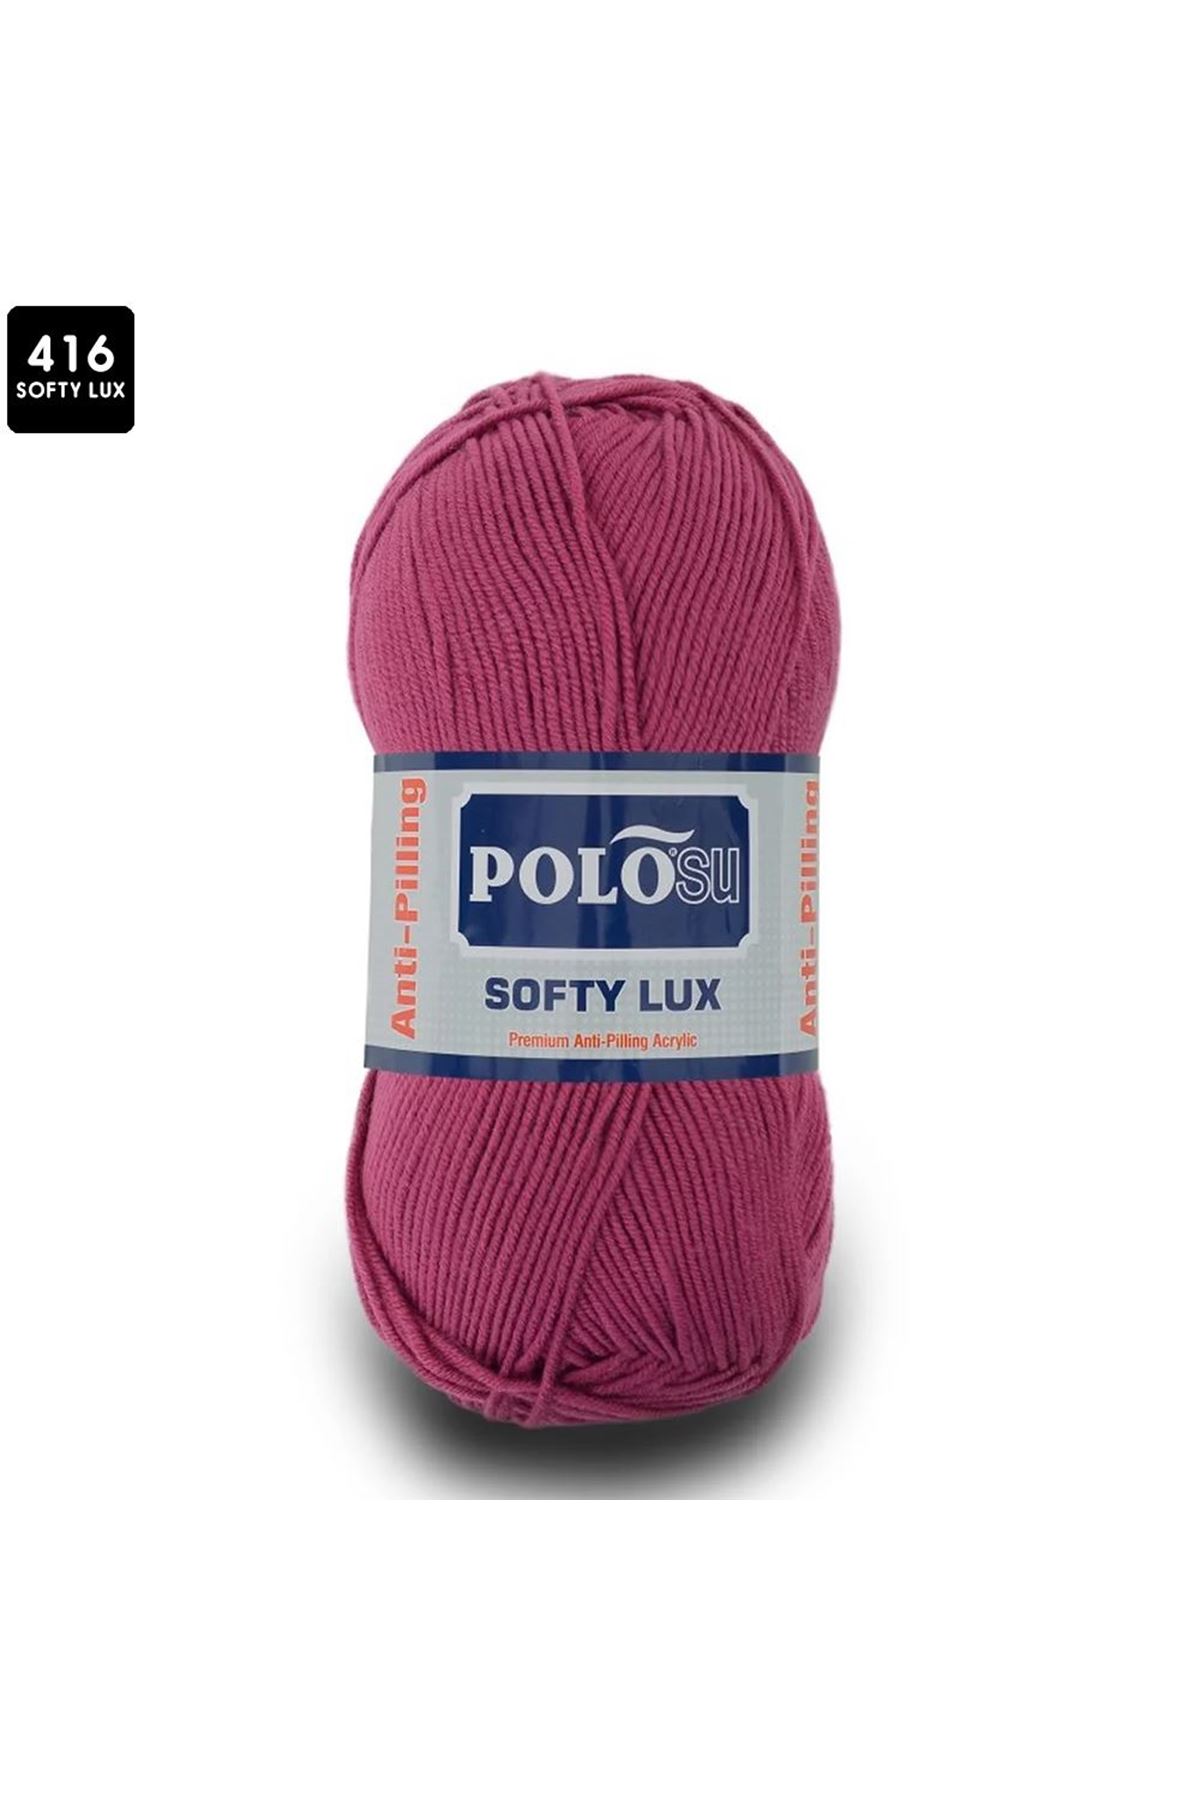 PoloSu Softy Lux Renk No:416